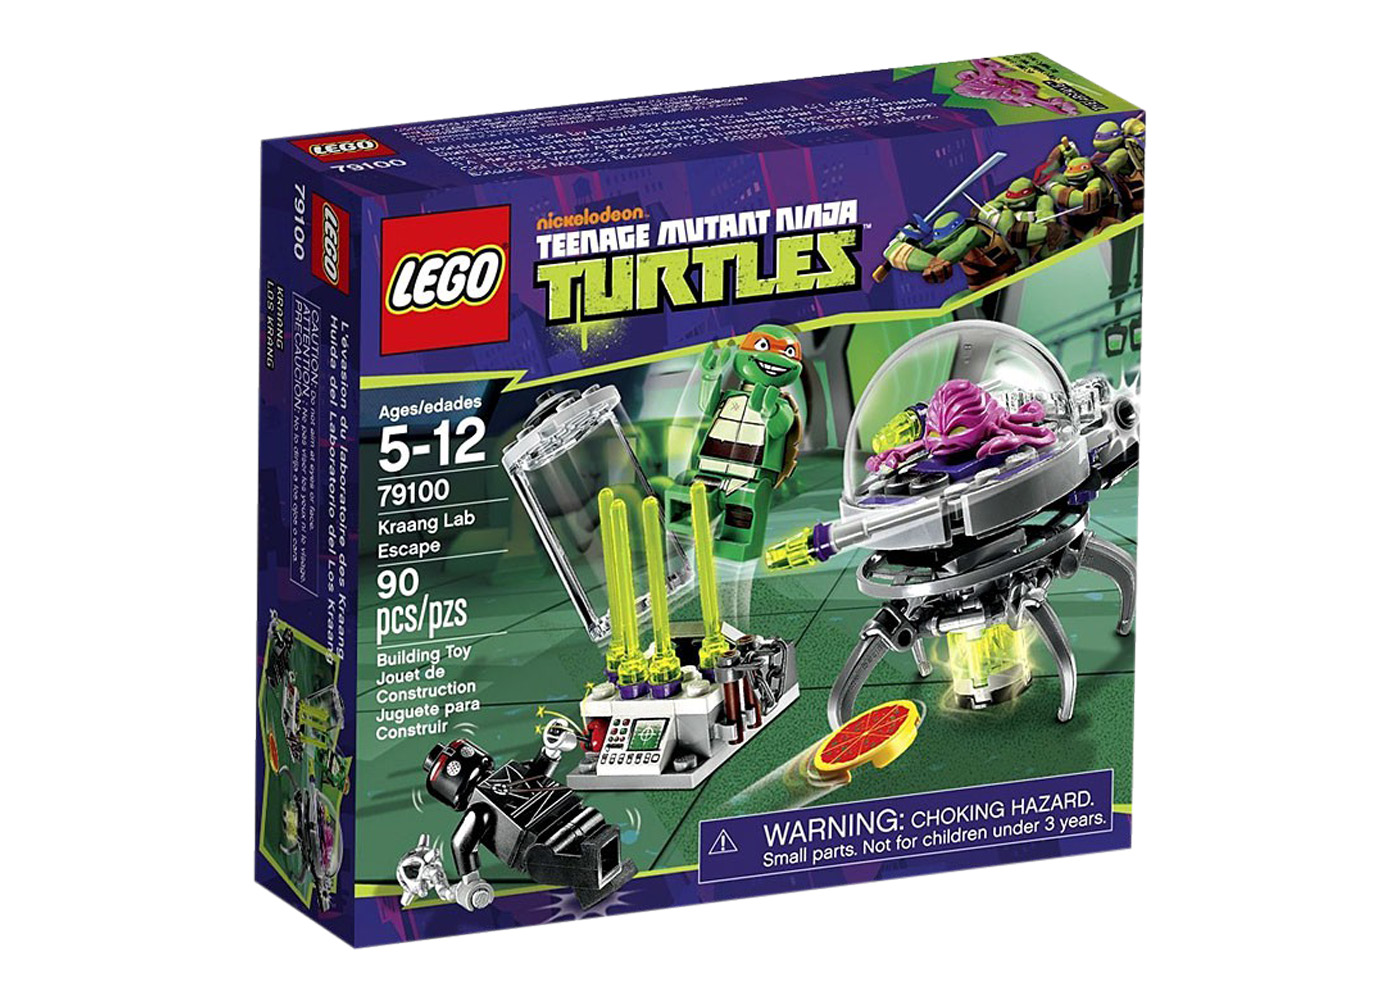 LEGO Teenage Mutant Ninja Turtles Kraang Lab Escape Set 79100 - JP